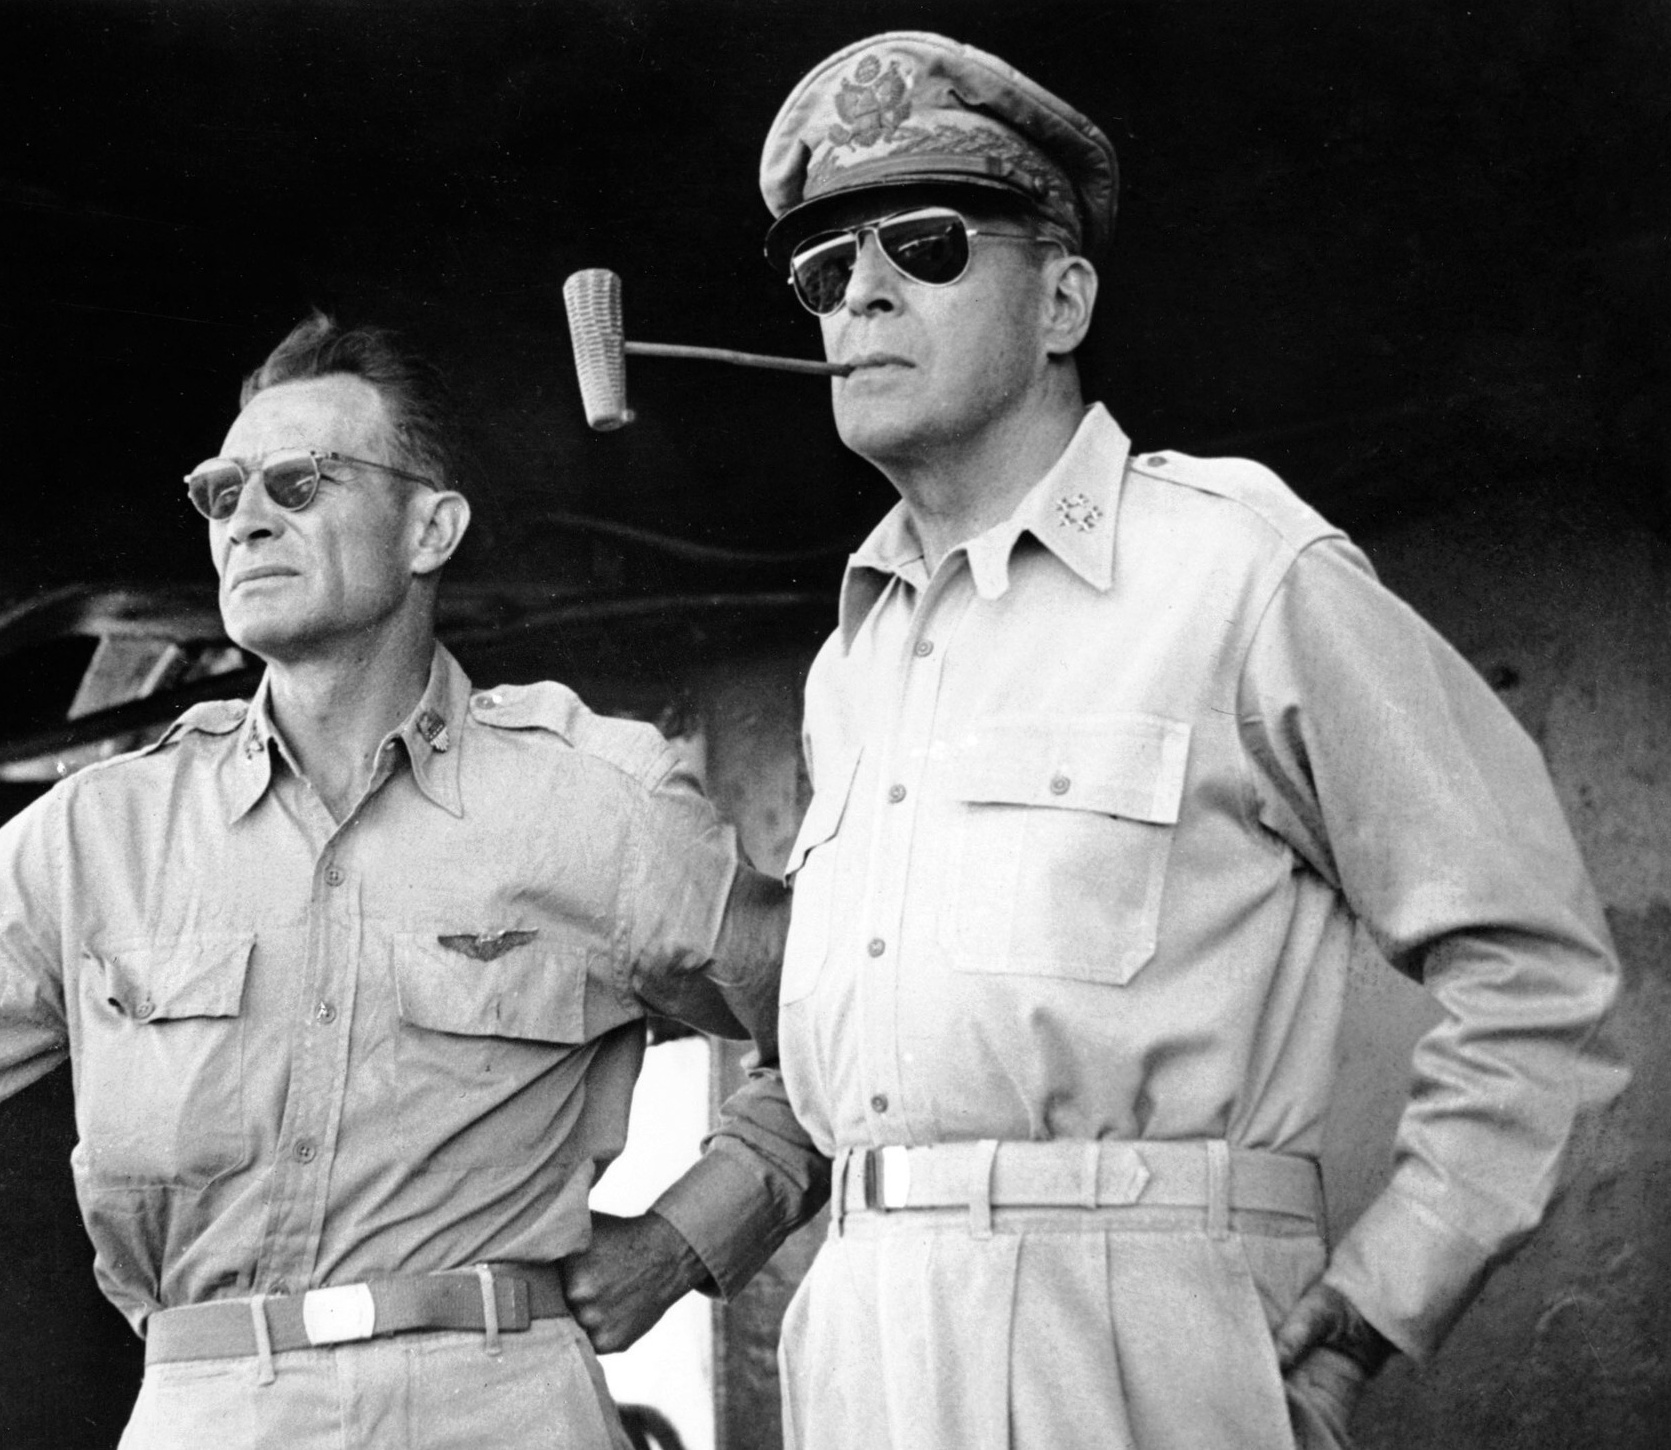 Obrovskou popularitu přinese „raybankám“ generál MacArthur v roce 1944.